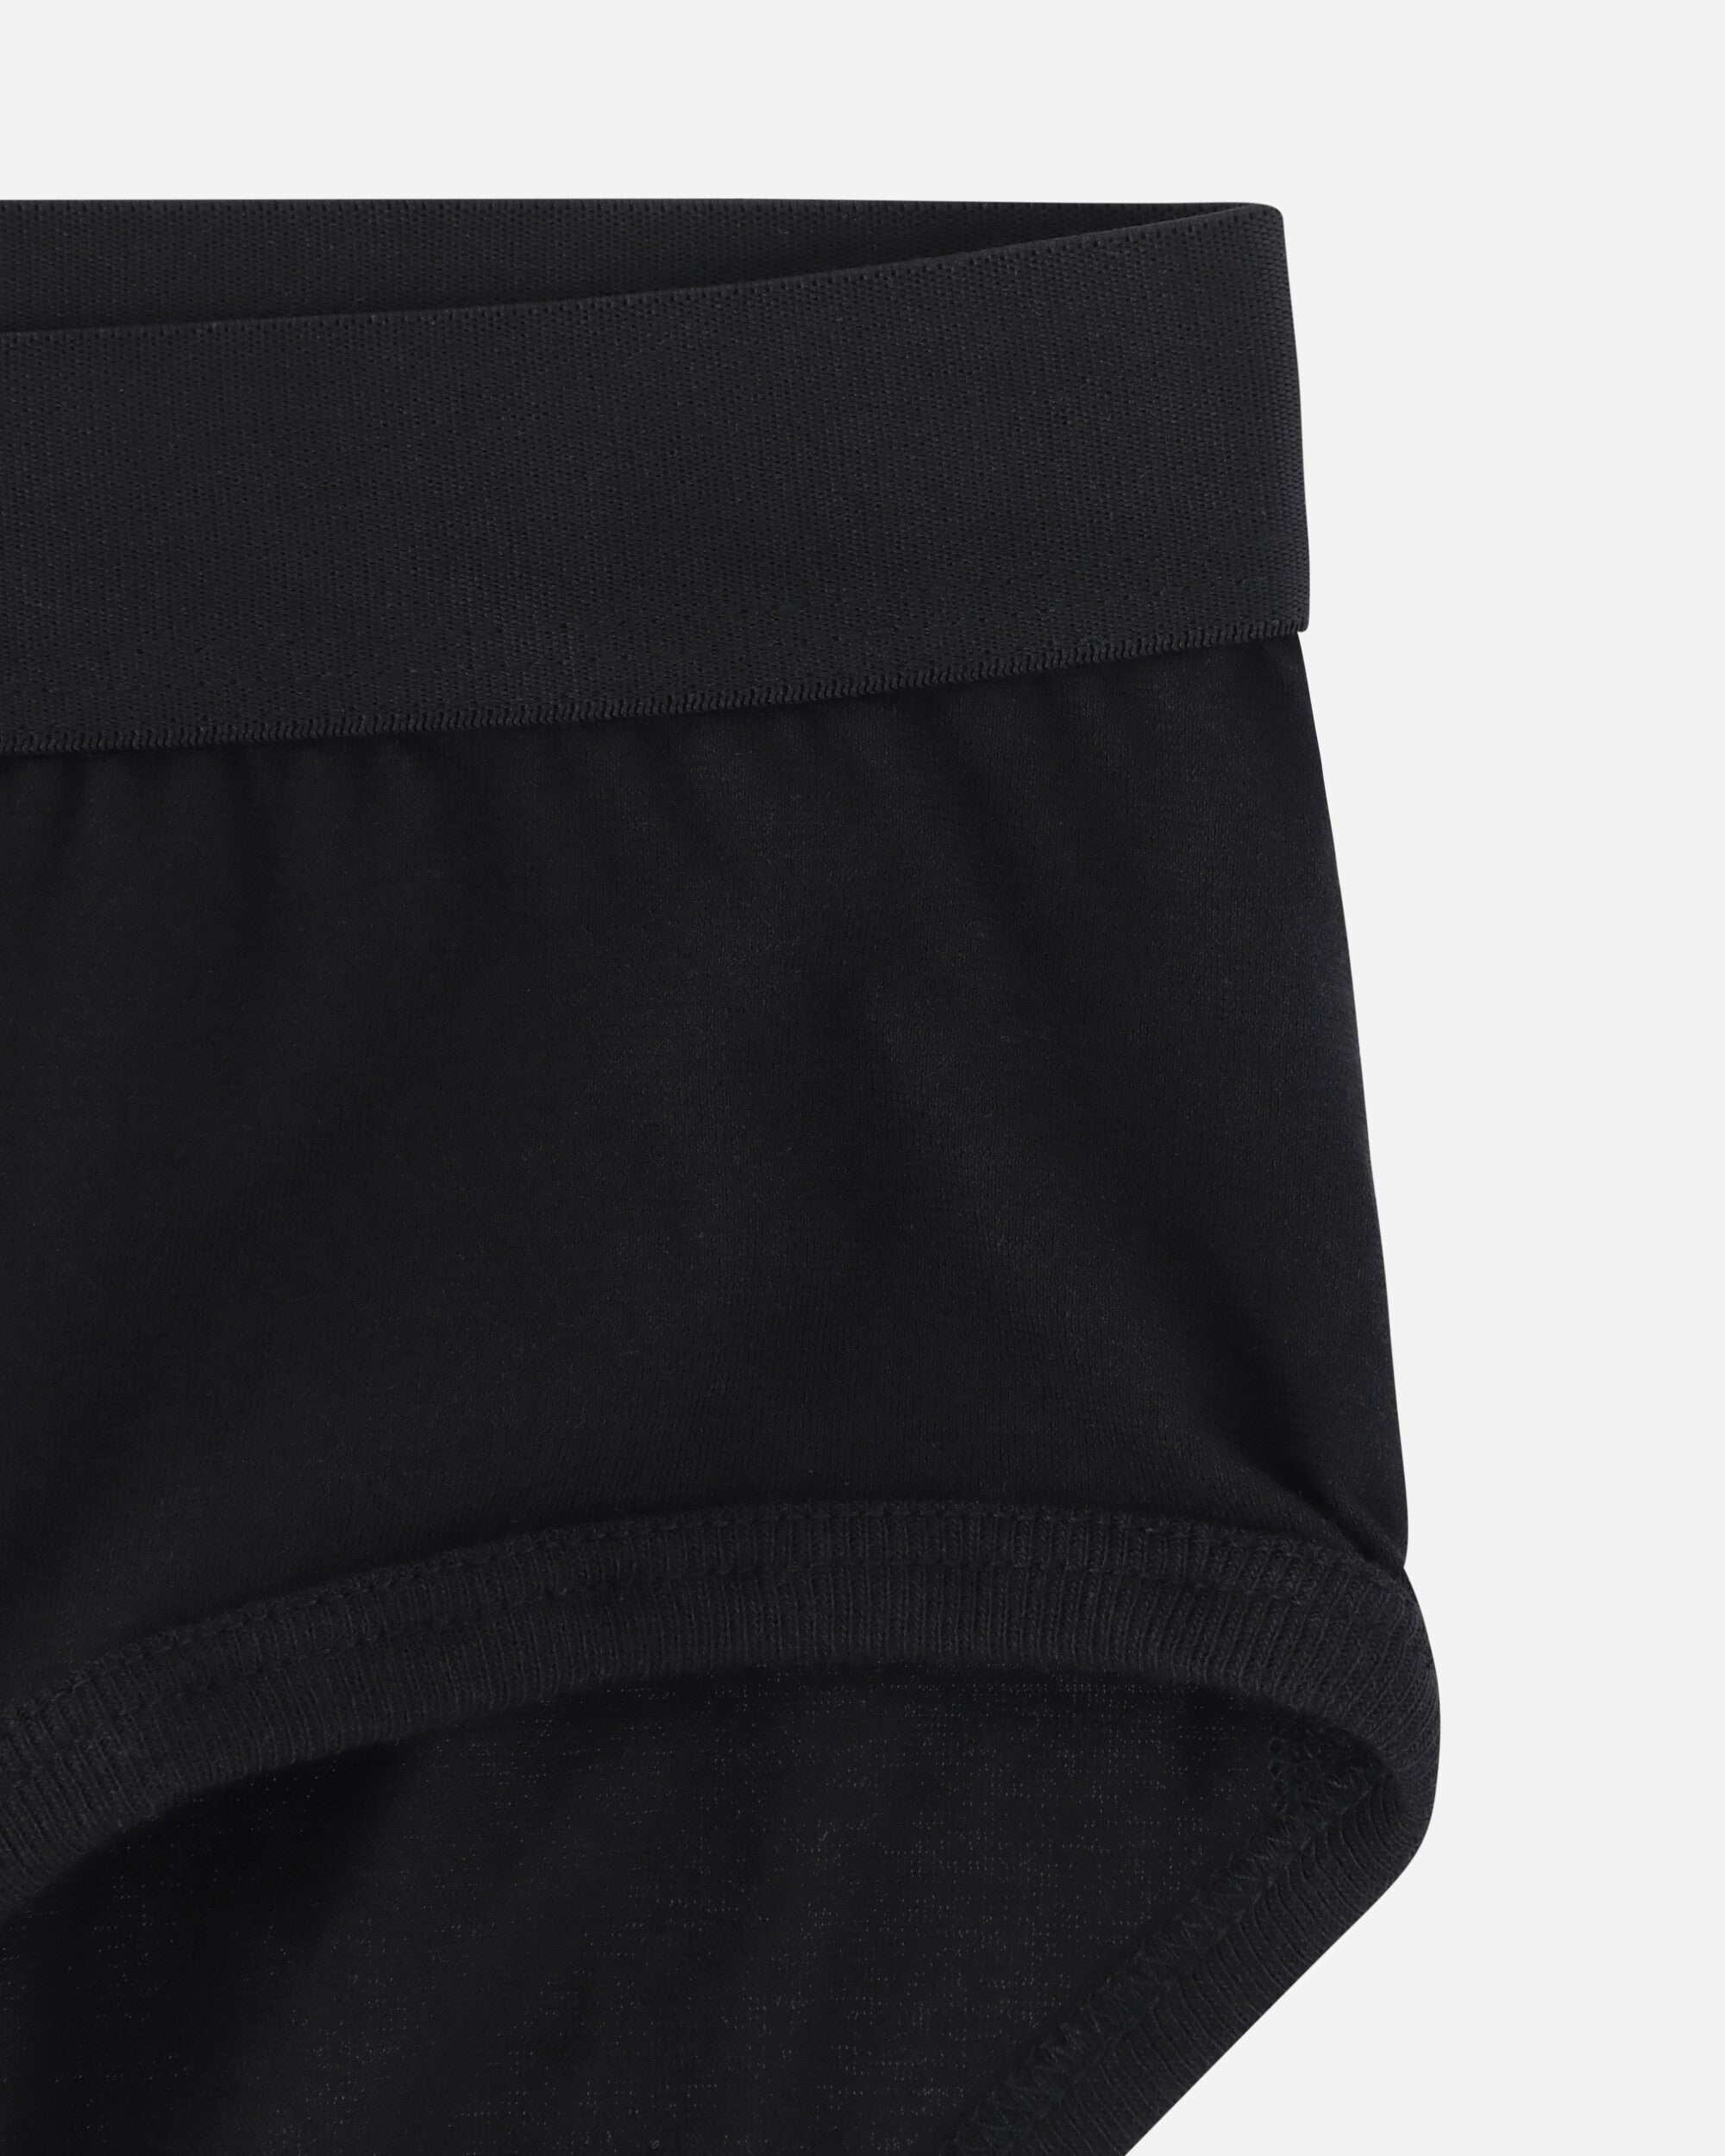 Comme Des Garçons Shirt Cdg Forever Brief Black Underwear Briefs FZ-T914-PER 1